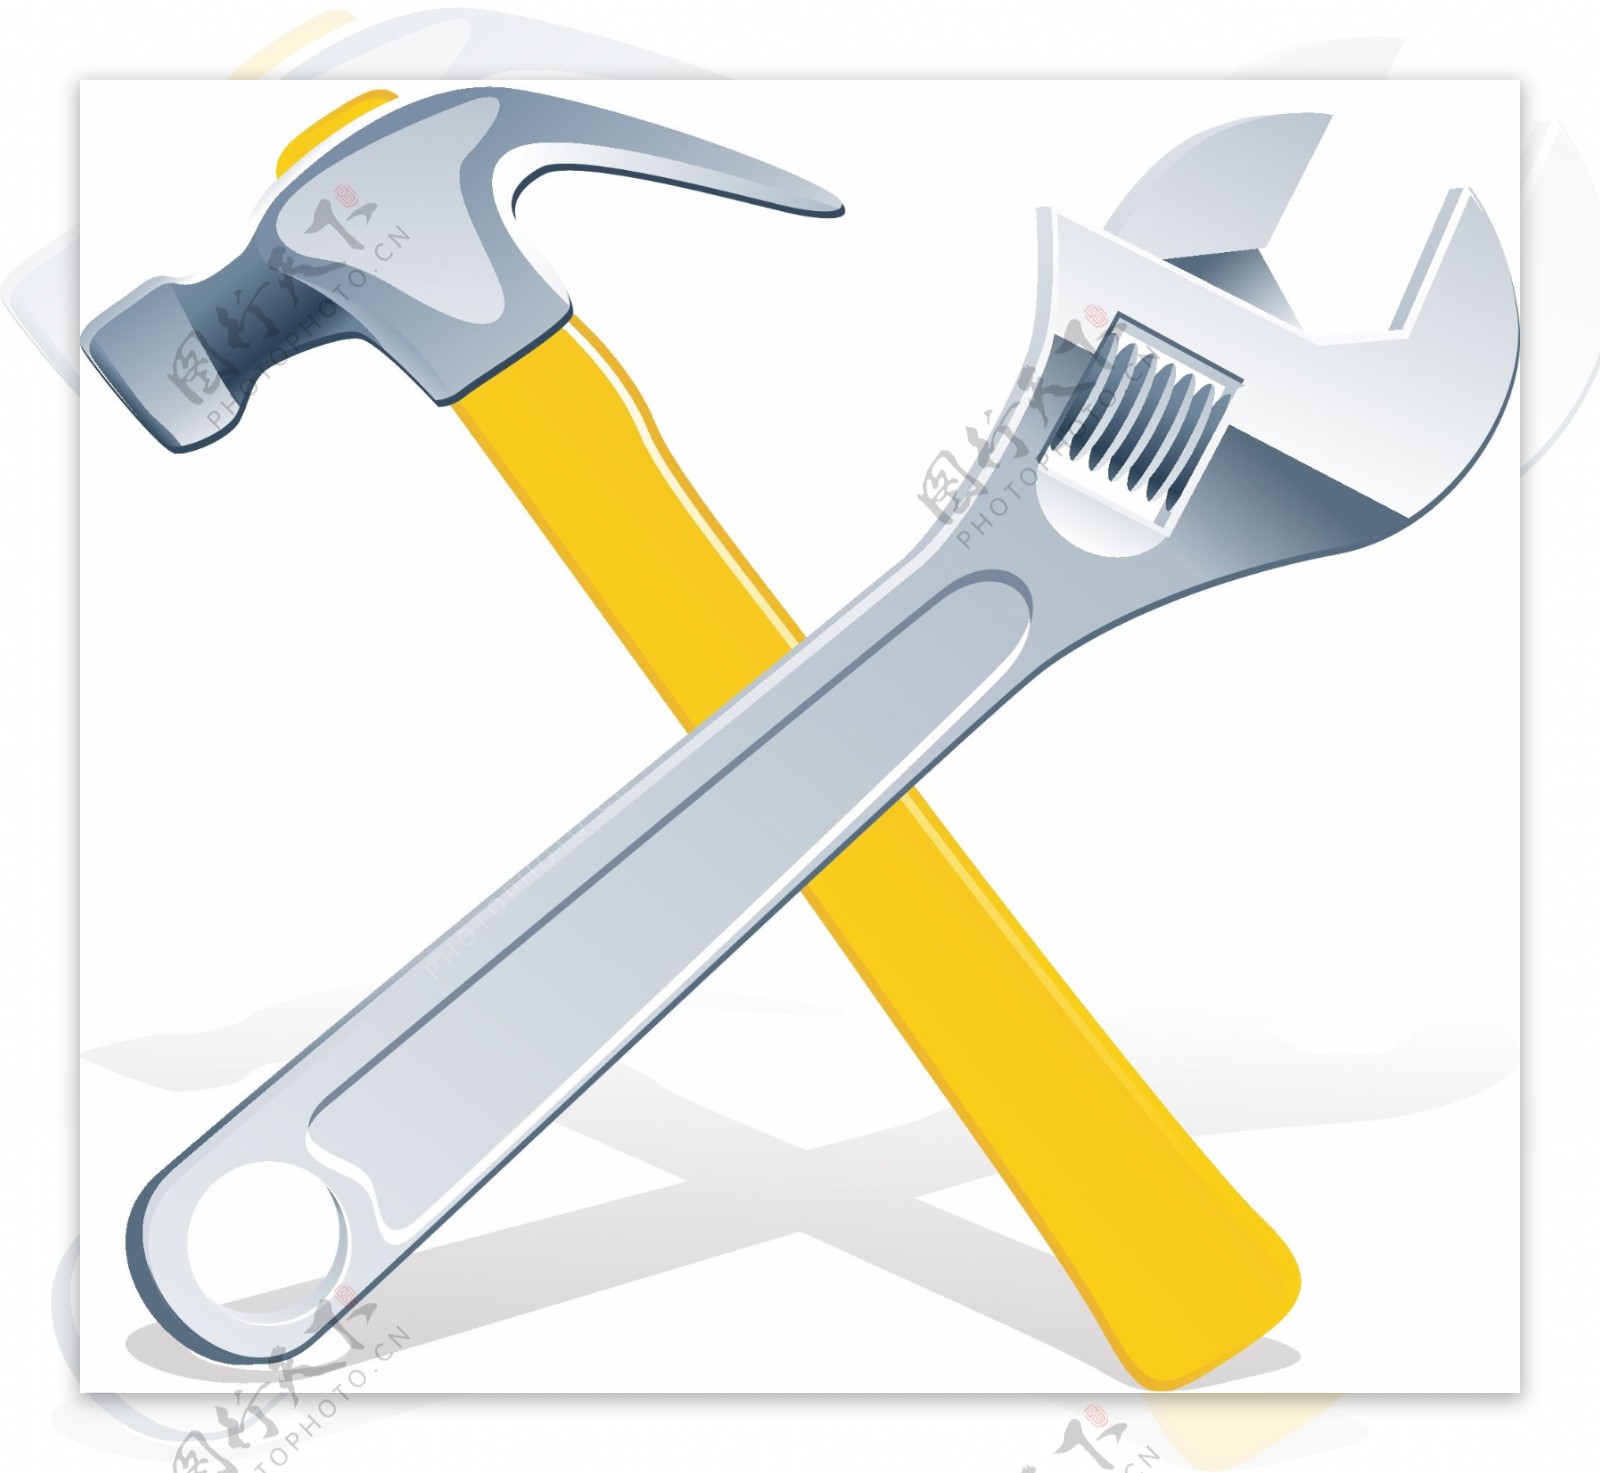 工具锤子黄色矢量元素卡通素材图片下载-素材编号06740294-素材天下图库